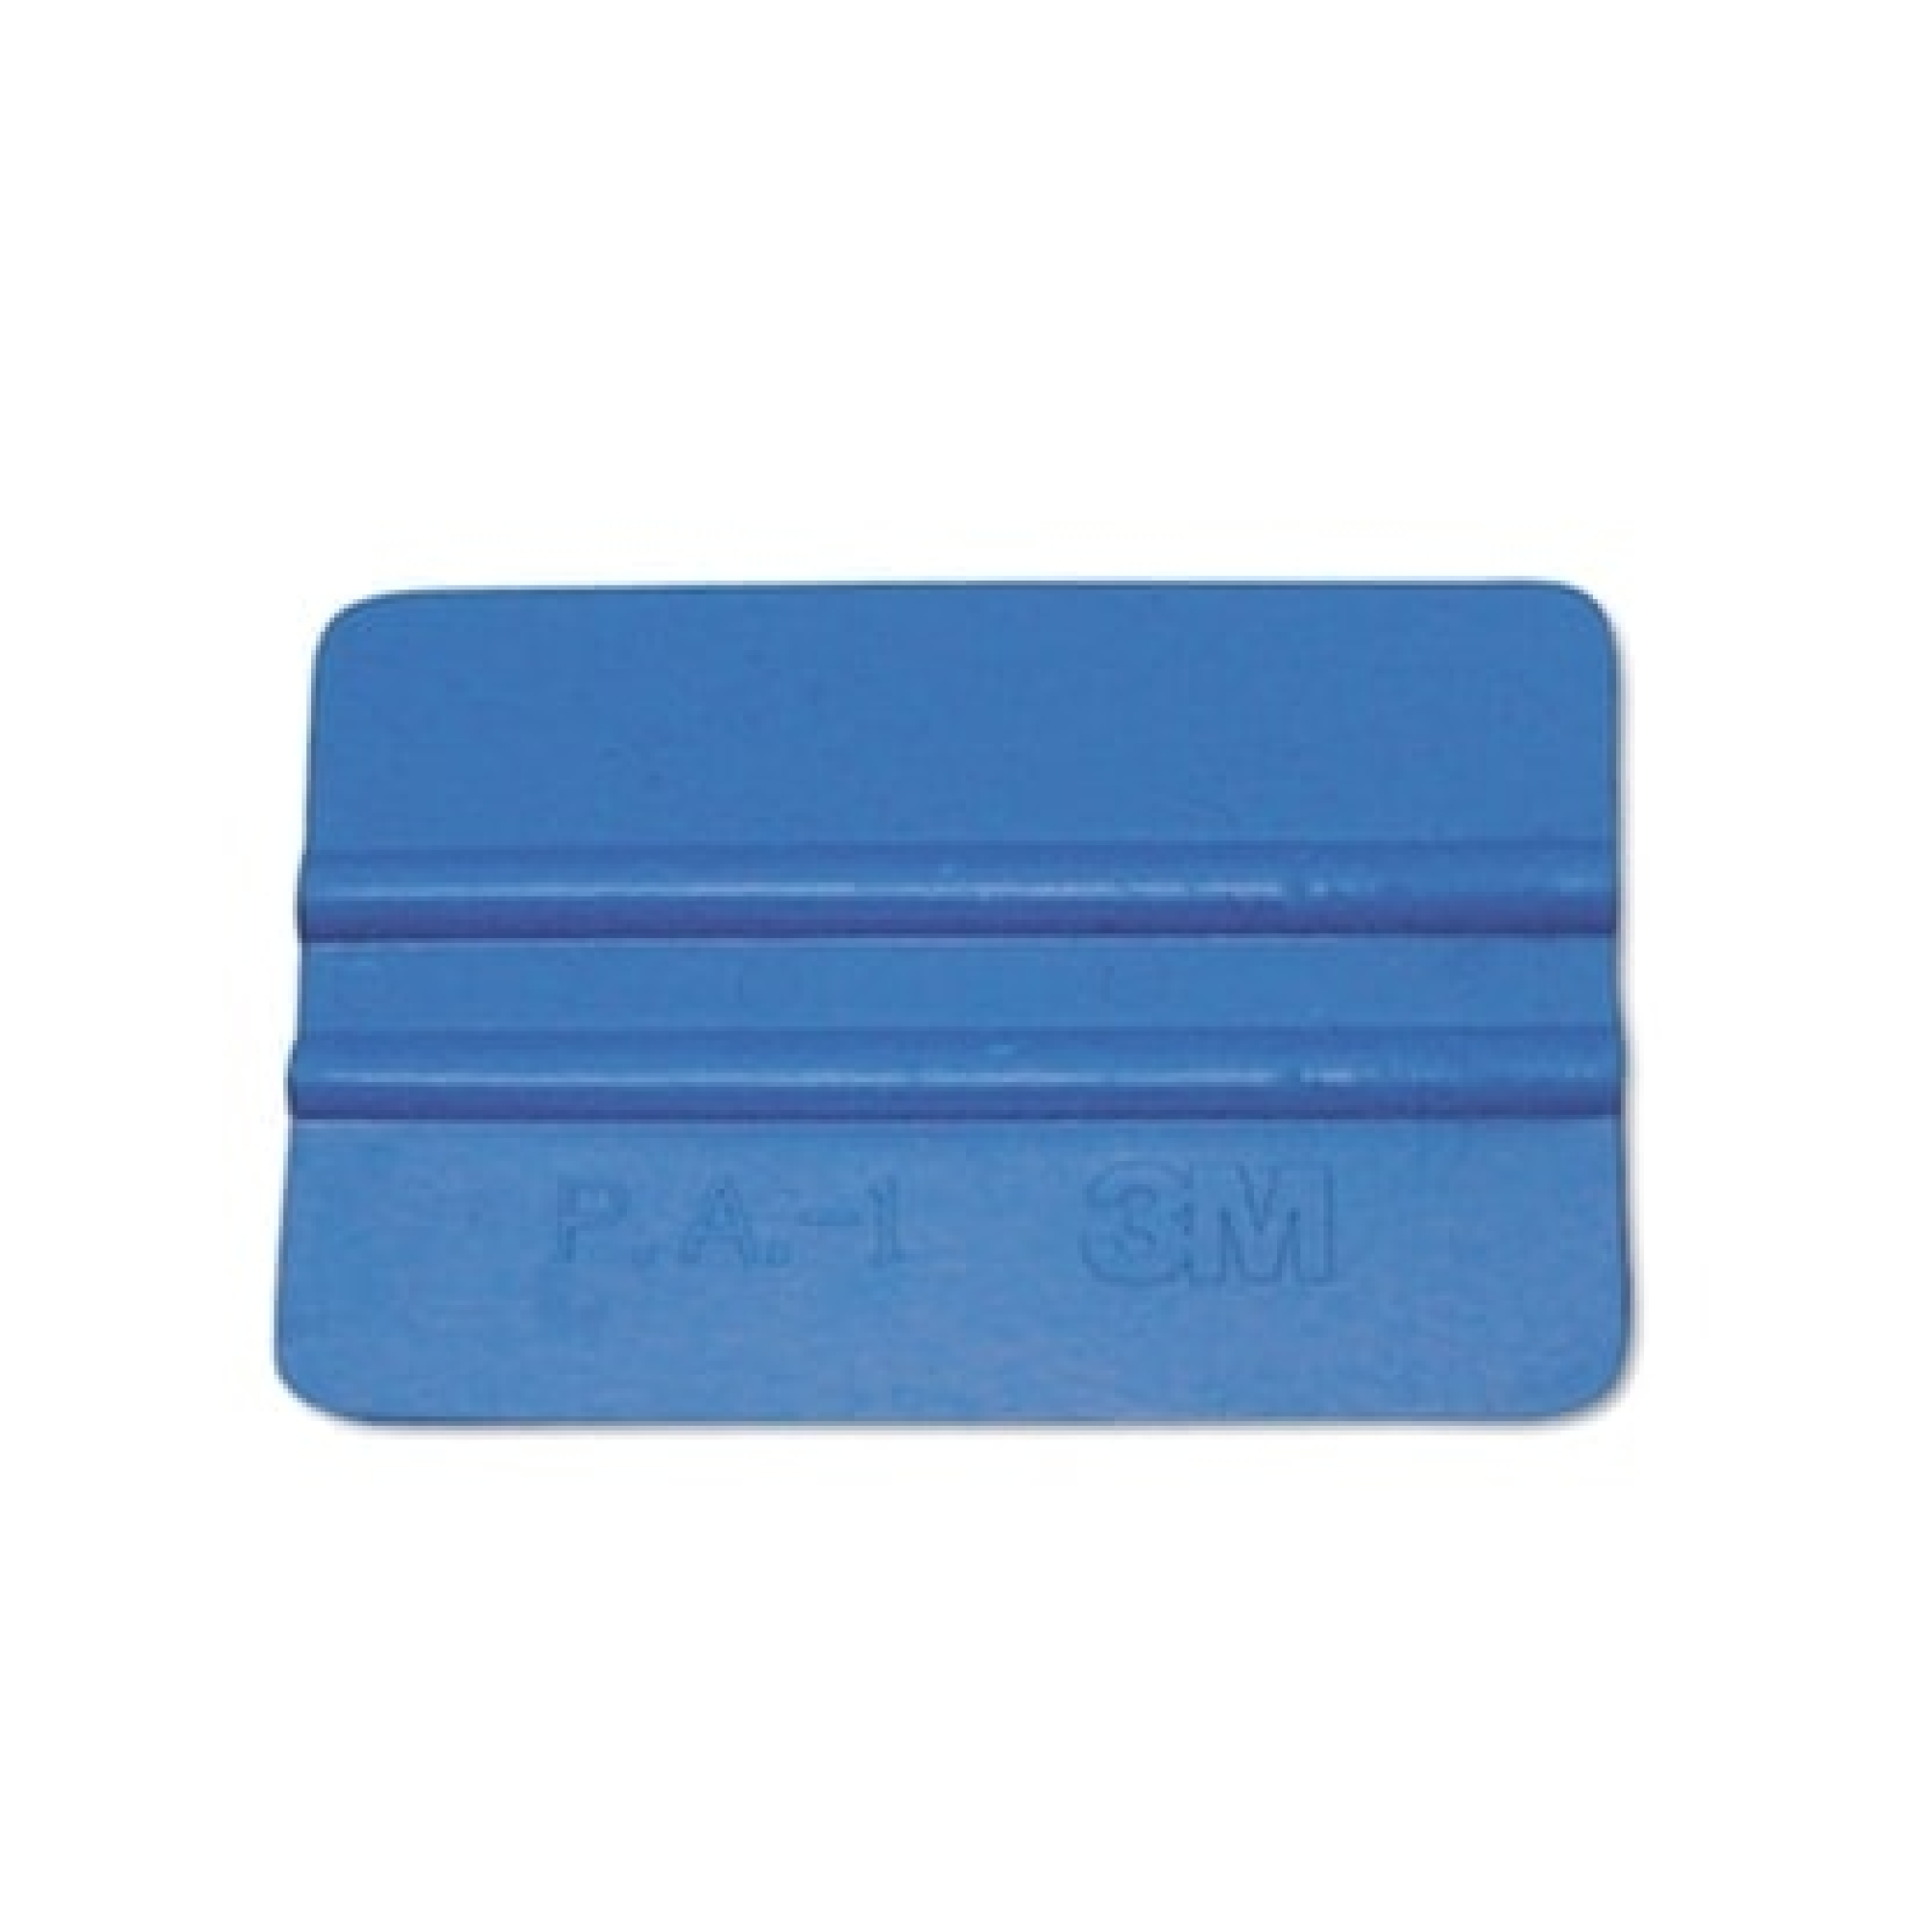 3M™ RAK-BLAU Rakel, Blau, Weich, 7 cm x 10 cm x 0,7 cm, Rakel für die  Applikation von Folien und dünnen Klebebändern